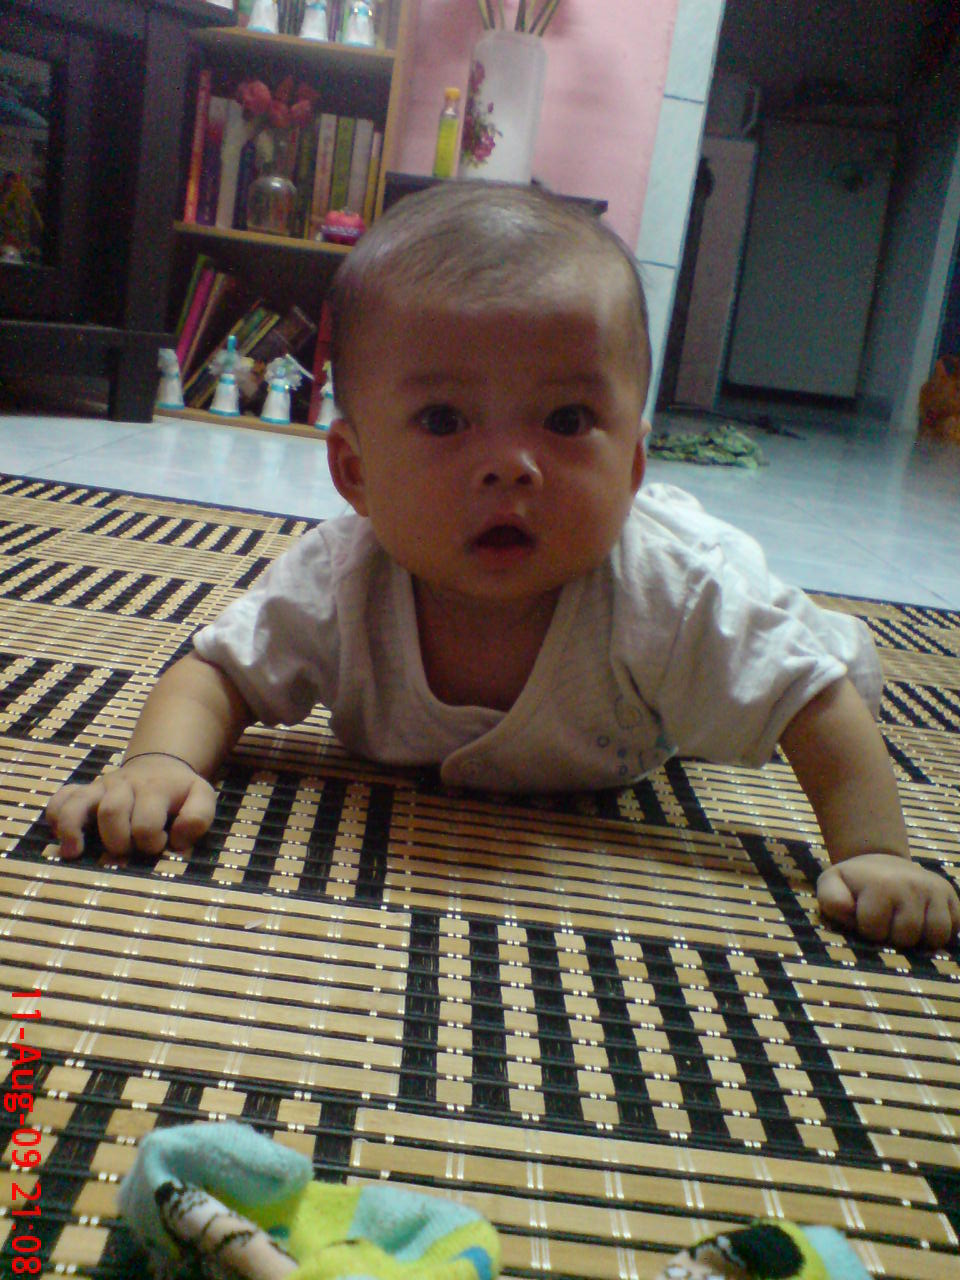 Anas - 7 months (6.7 kg)